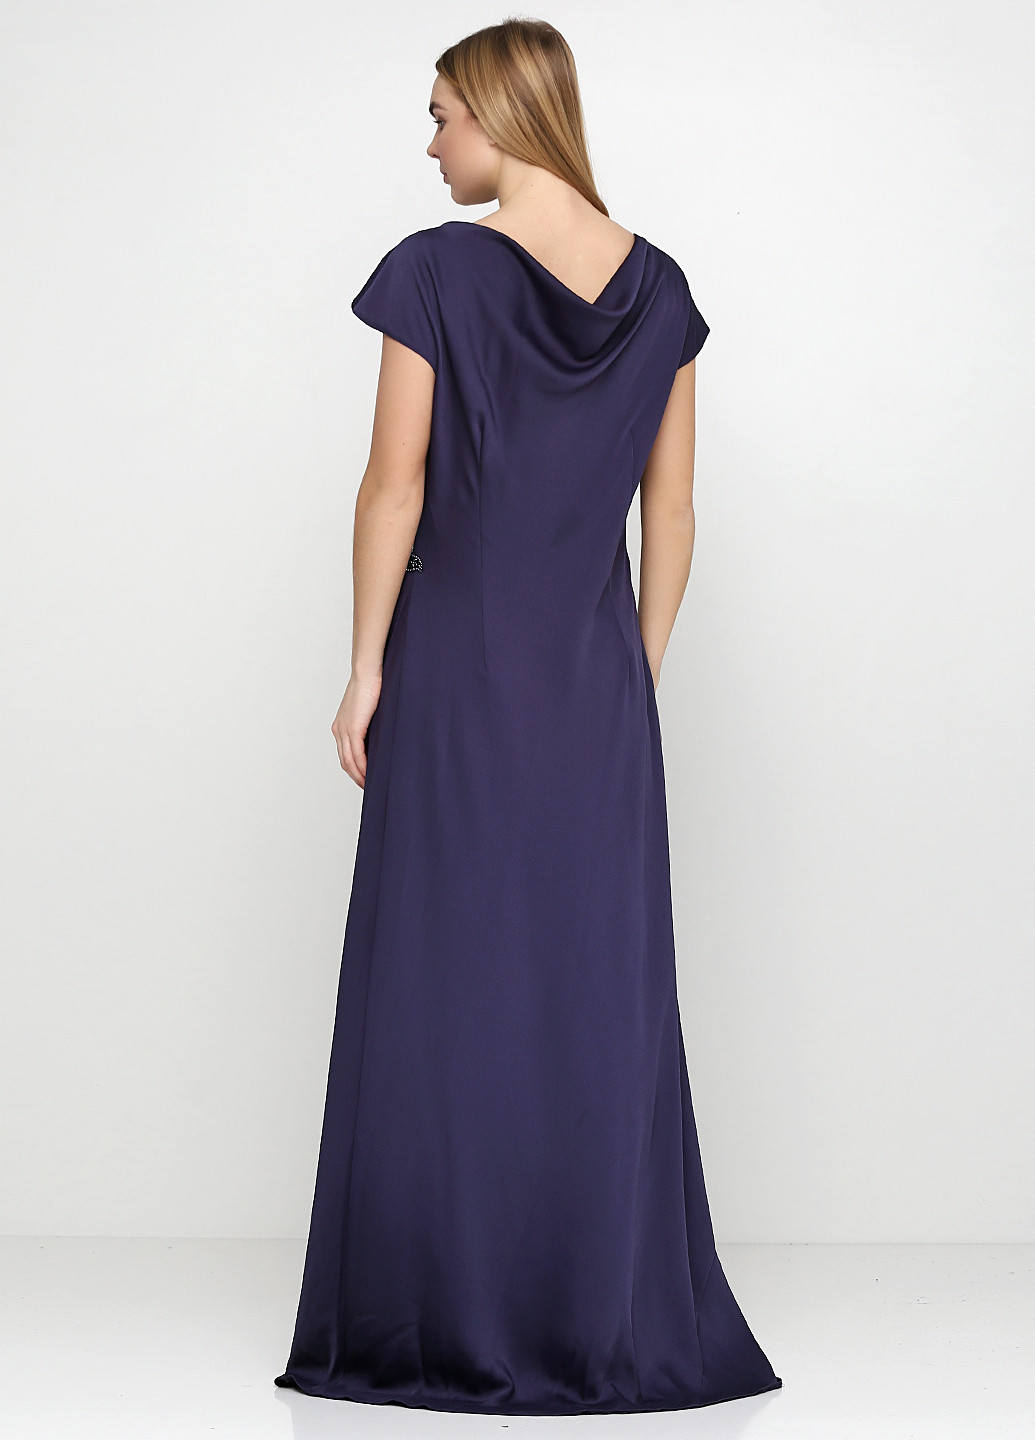 Темно-фиолетовое вечернее платье макси Young Couture однотонное